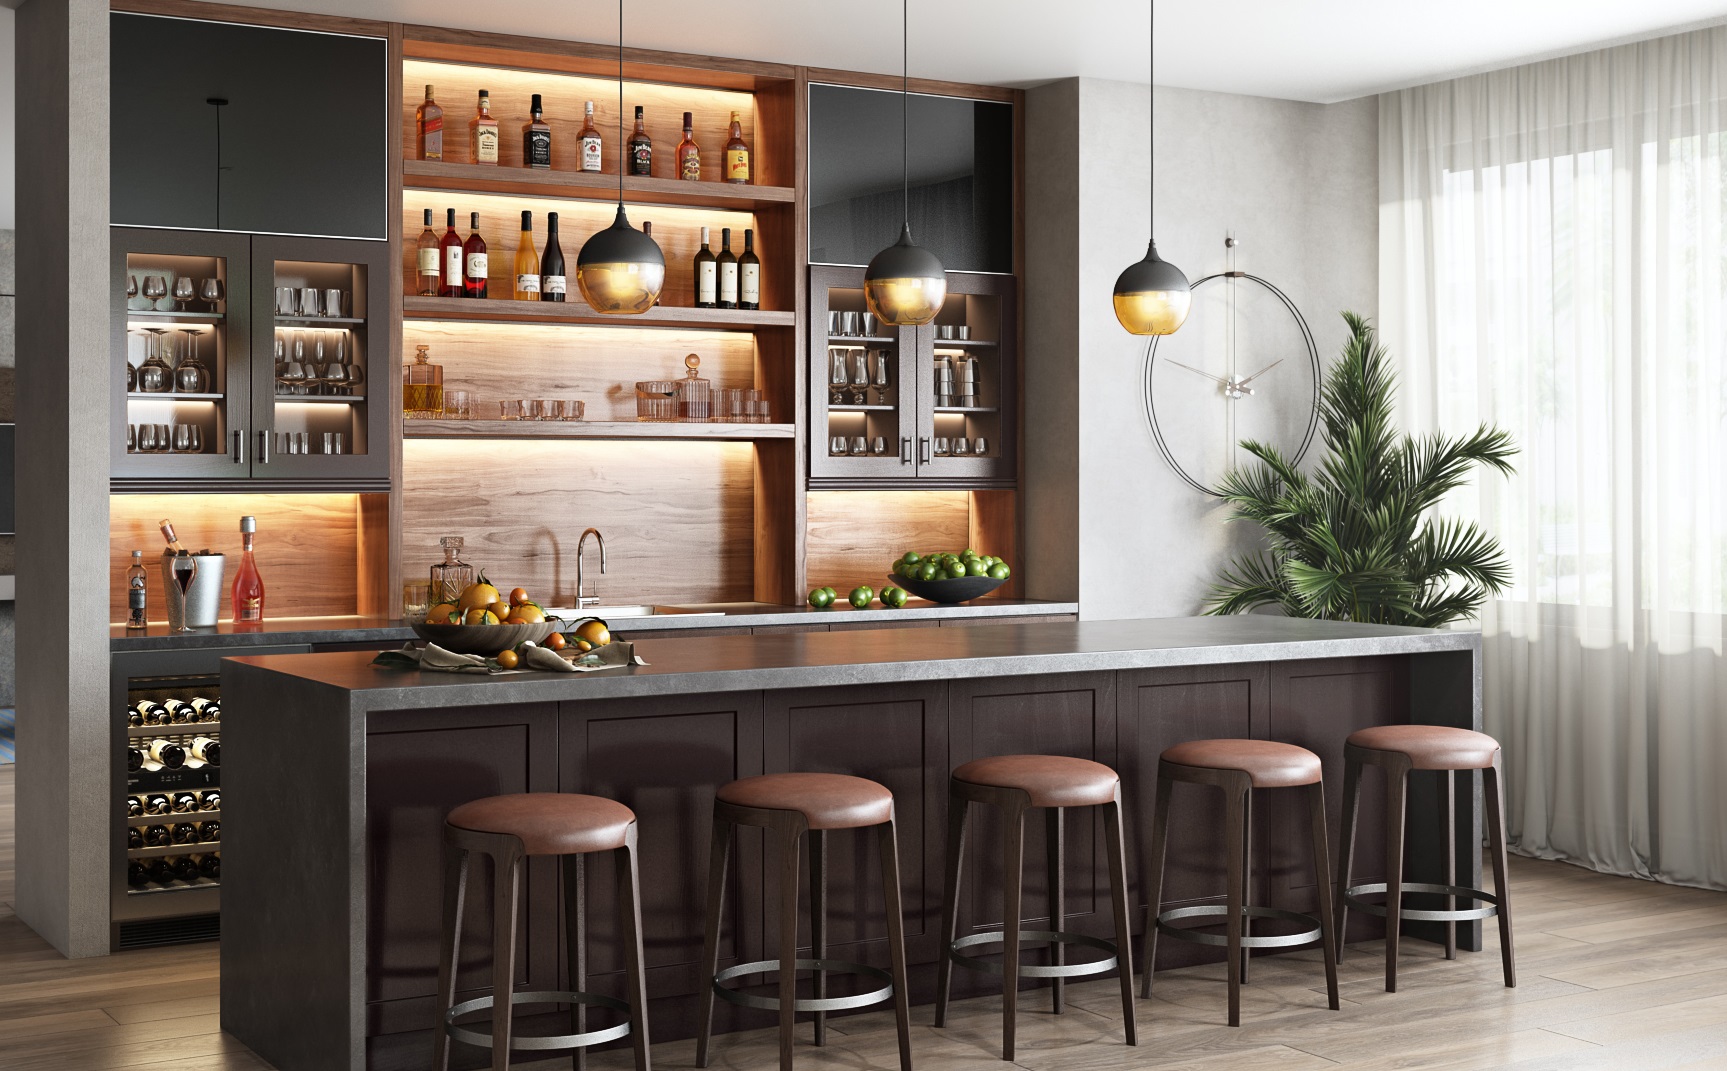 Todays Designer Kitchens Espresso-bar-1 Do Dark Cabinets Work in Small Kitchens? 